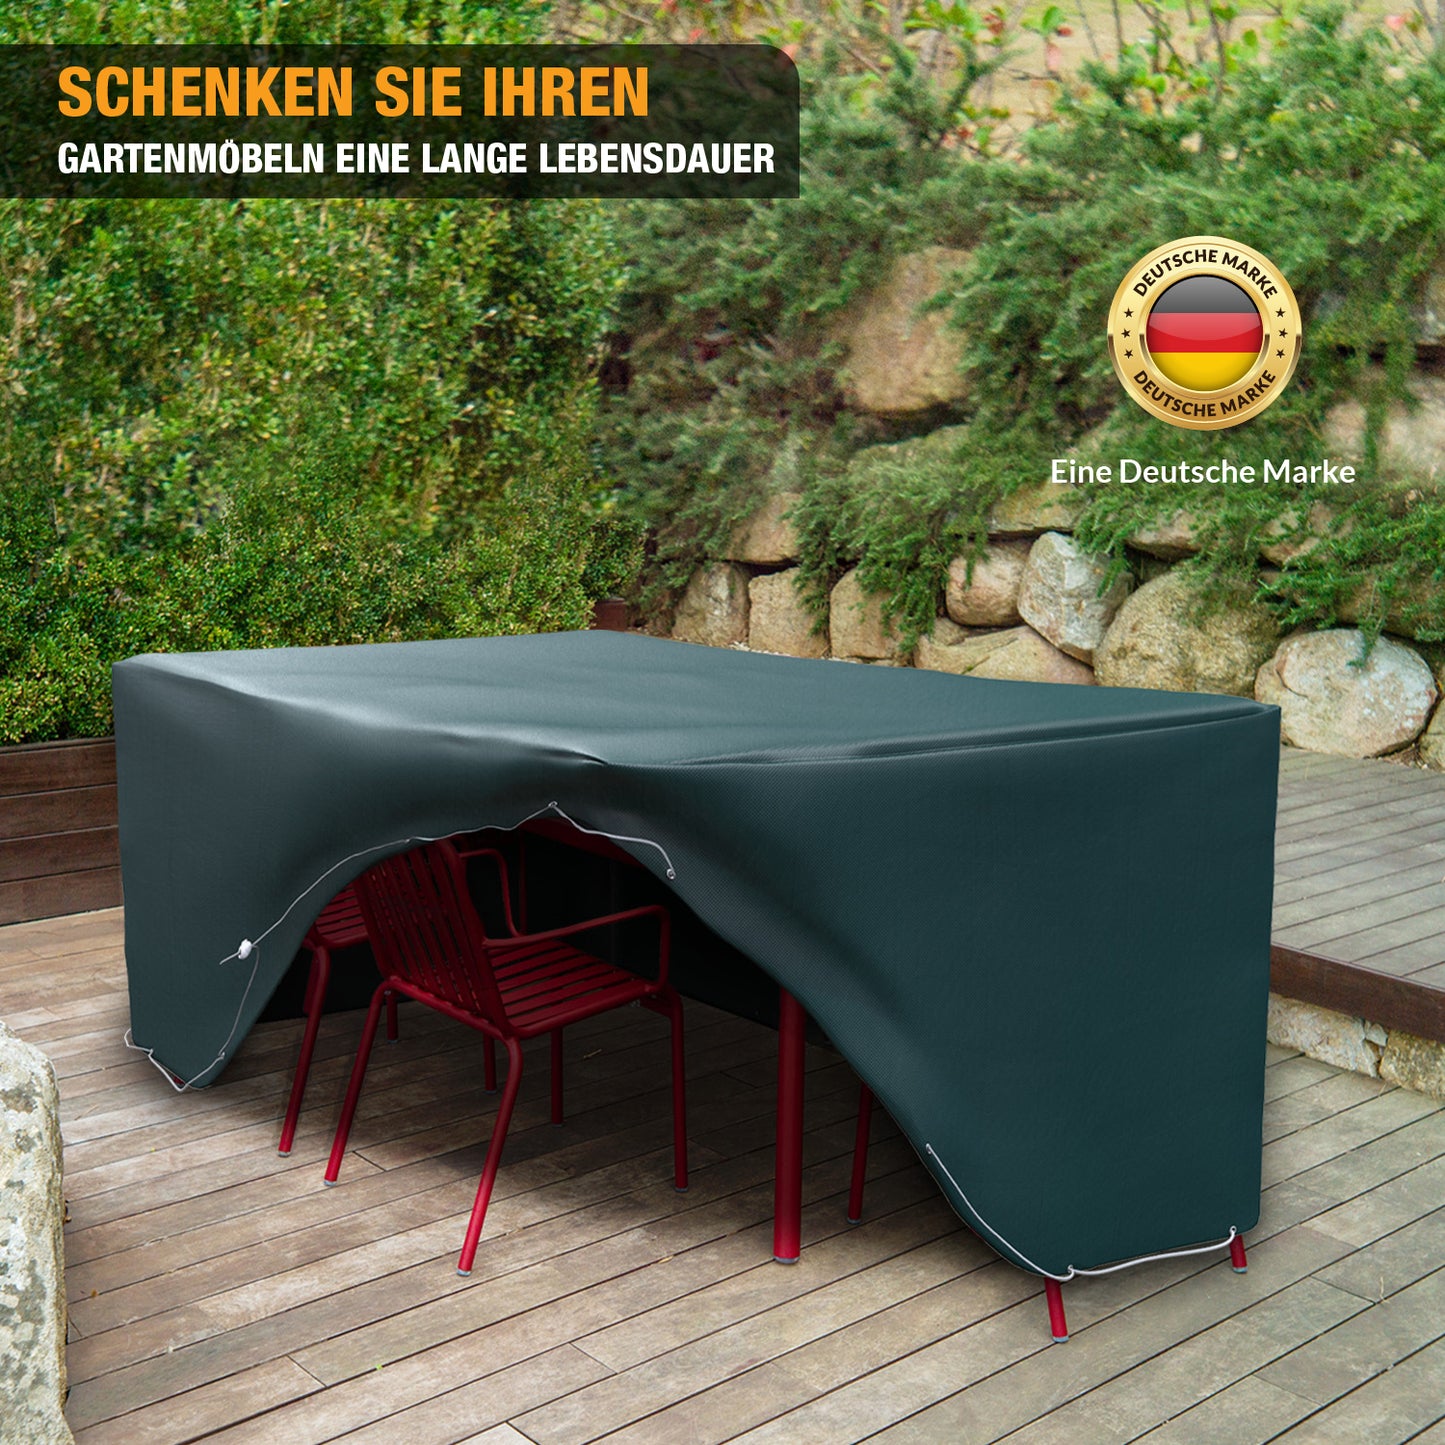 Schutzhülle Gartenmöbel - rechteckig 240 x 136 x 88 cm - wasserdicht - Abdeckhaube für Sitzgarnituren, Tisch & Stühle - grün